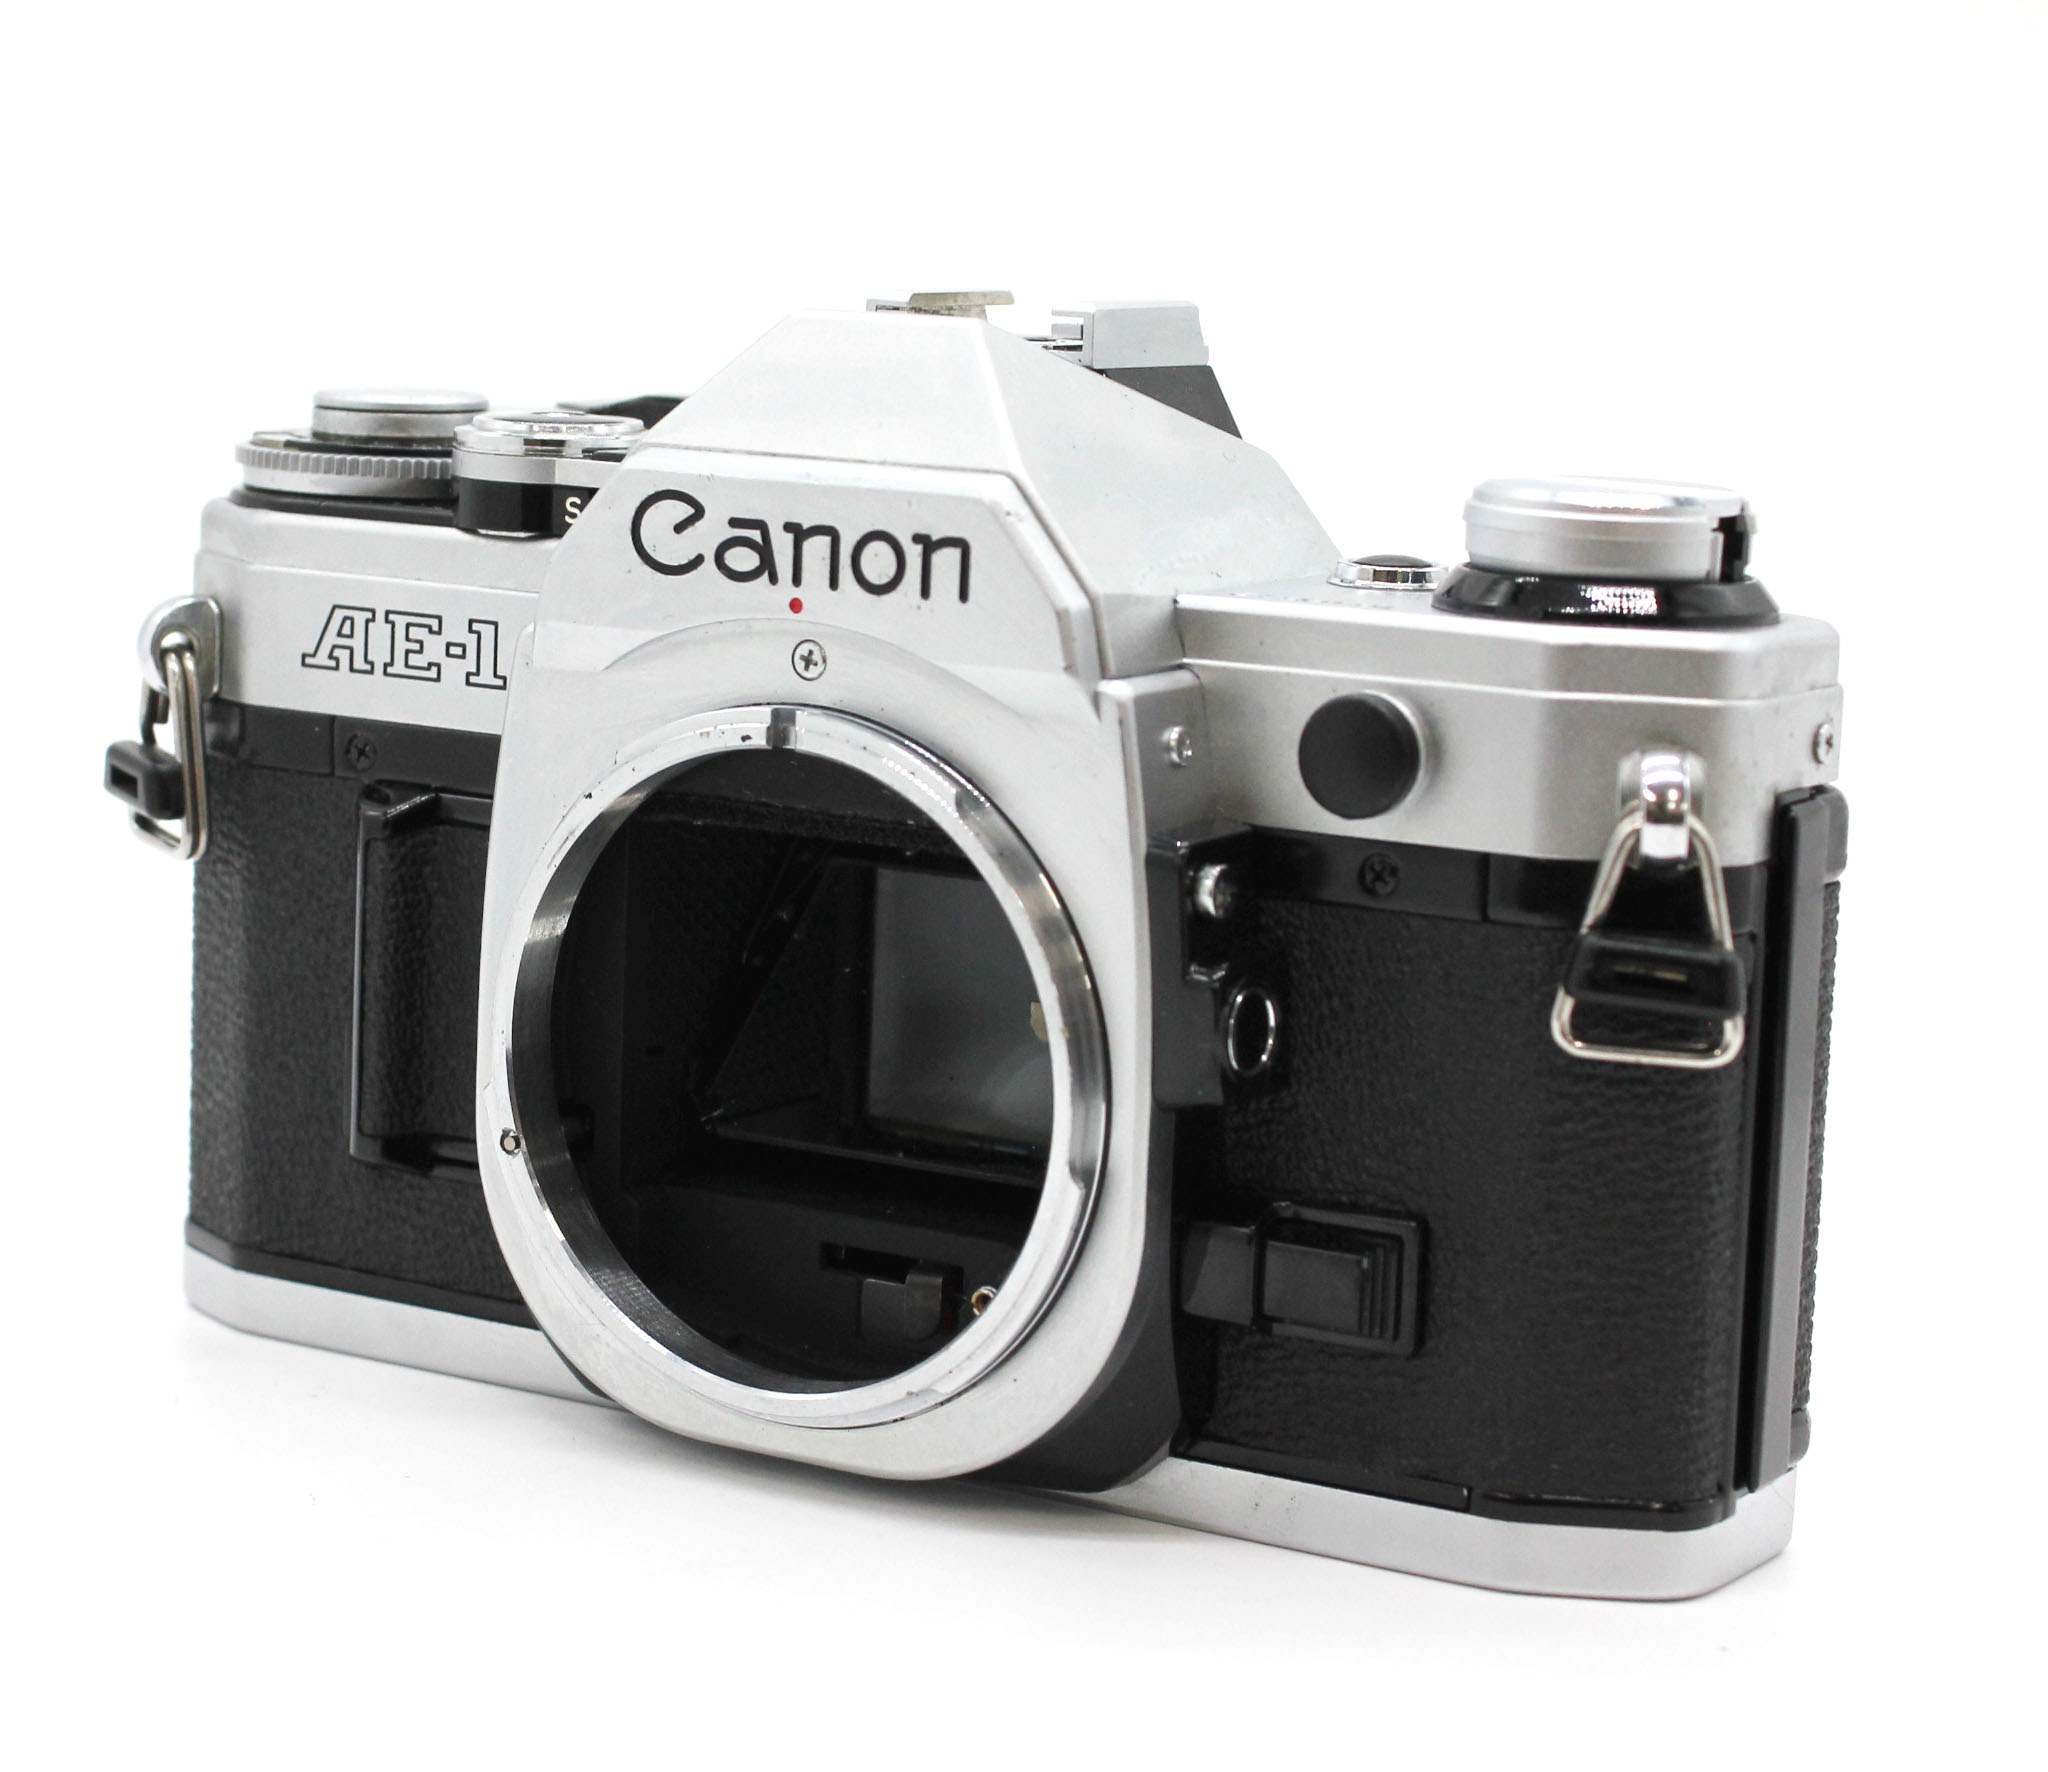 Canon AE-1 35mm SLR Camera with FD 50mm F/1.4 S.S.C. Lens from Japan Photo 1